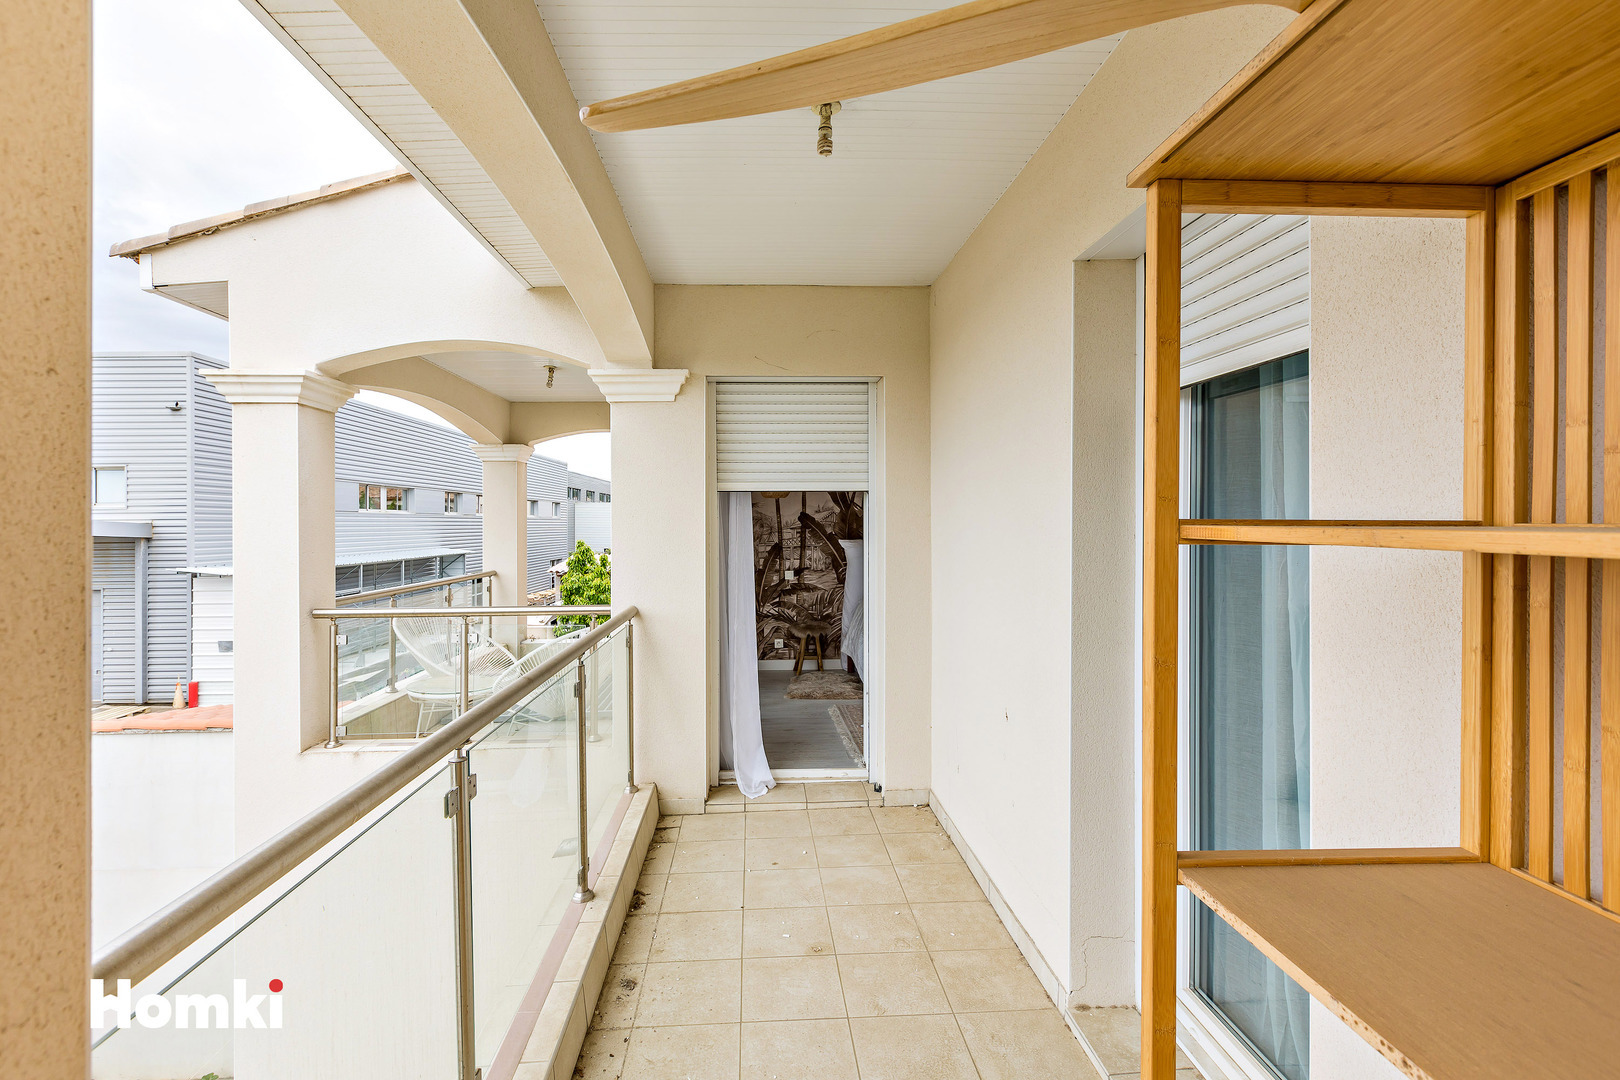 Homki - Vente Maison/villa  de 130.0 m² à Béziers 34500